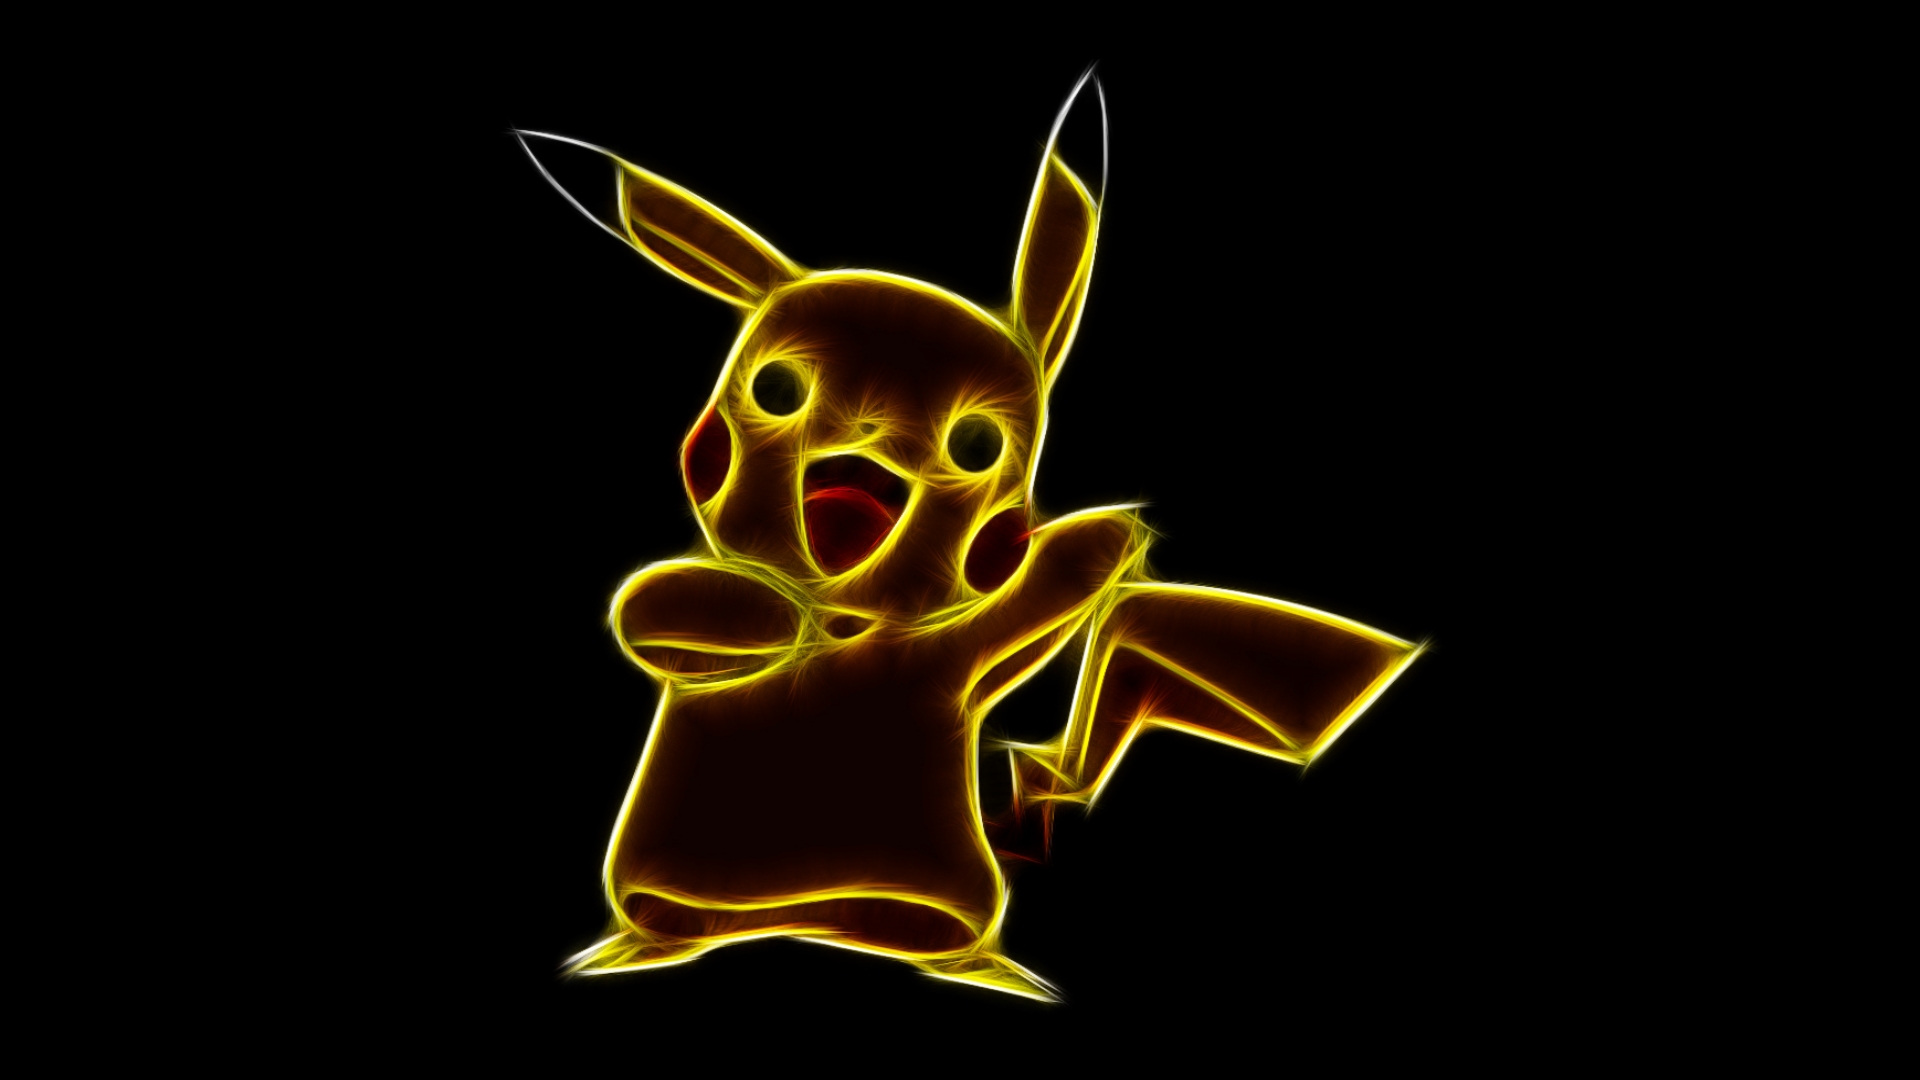 26+] Neon Pikachu Wallpapers - WallpaperSafari